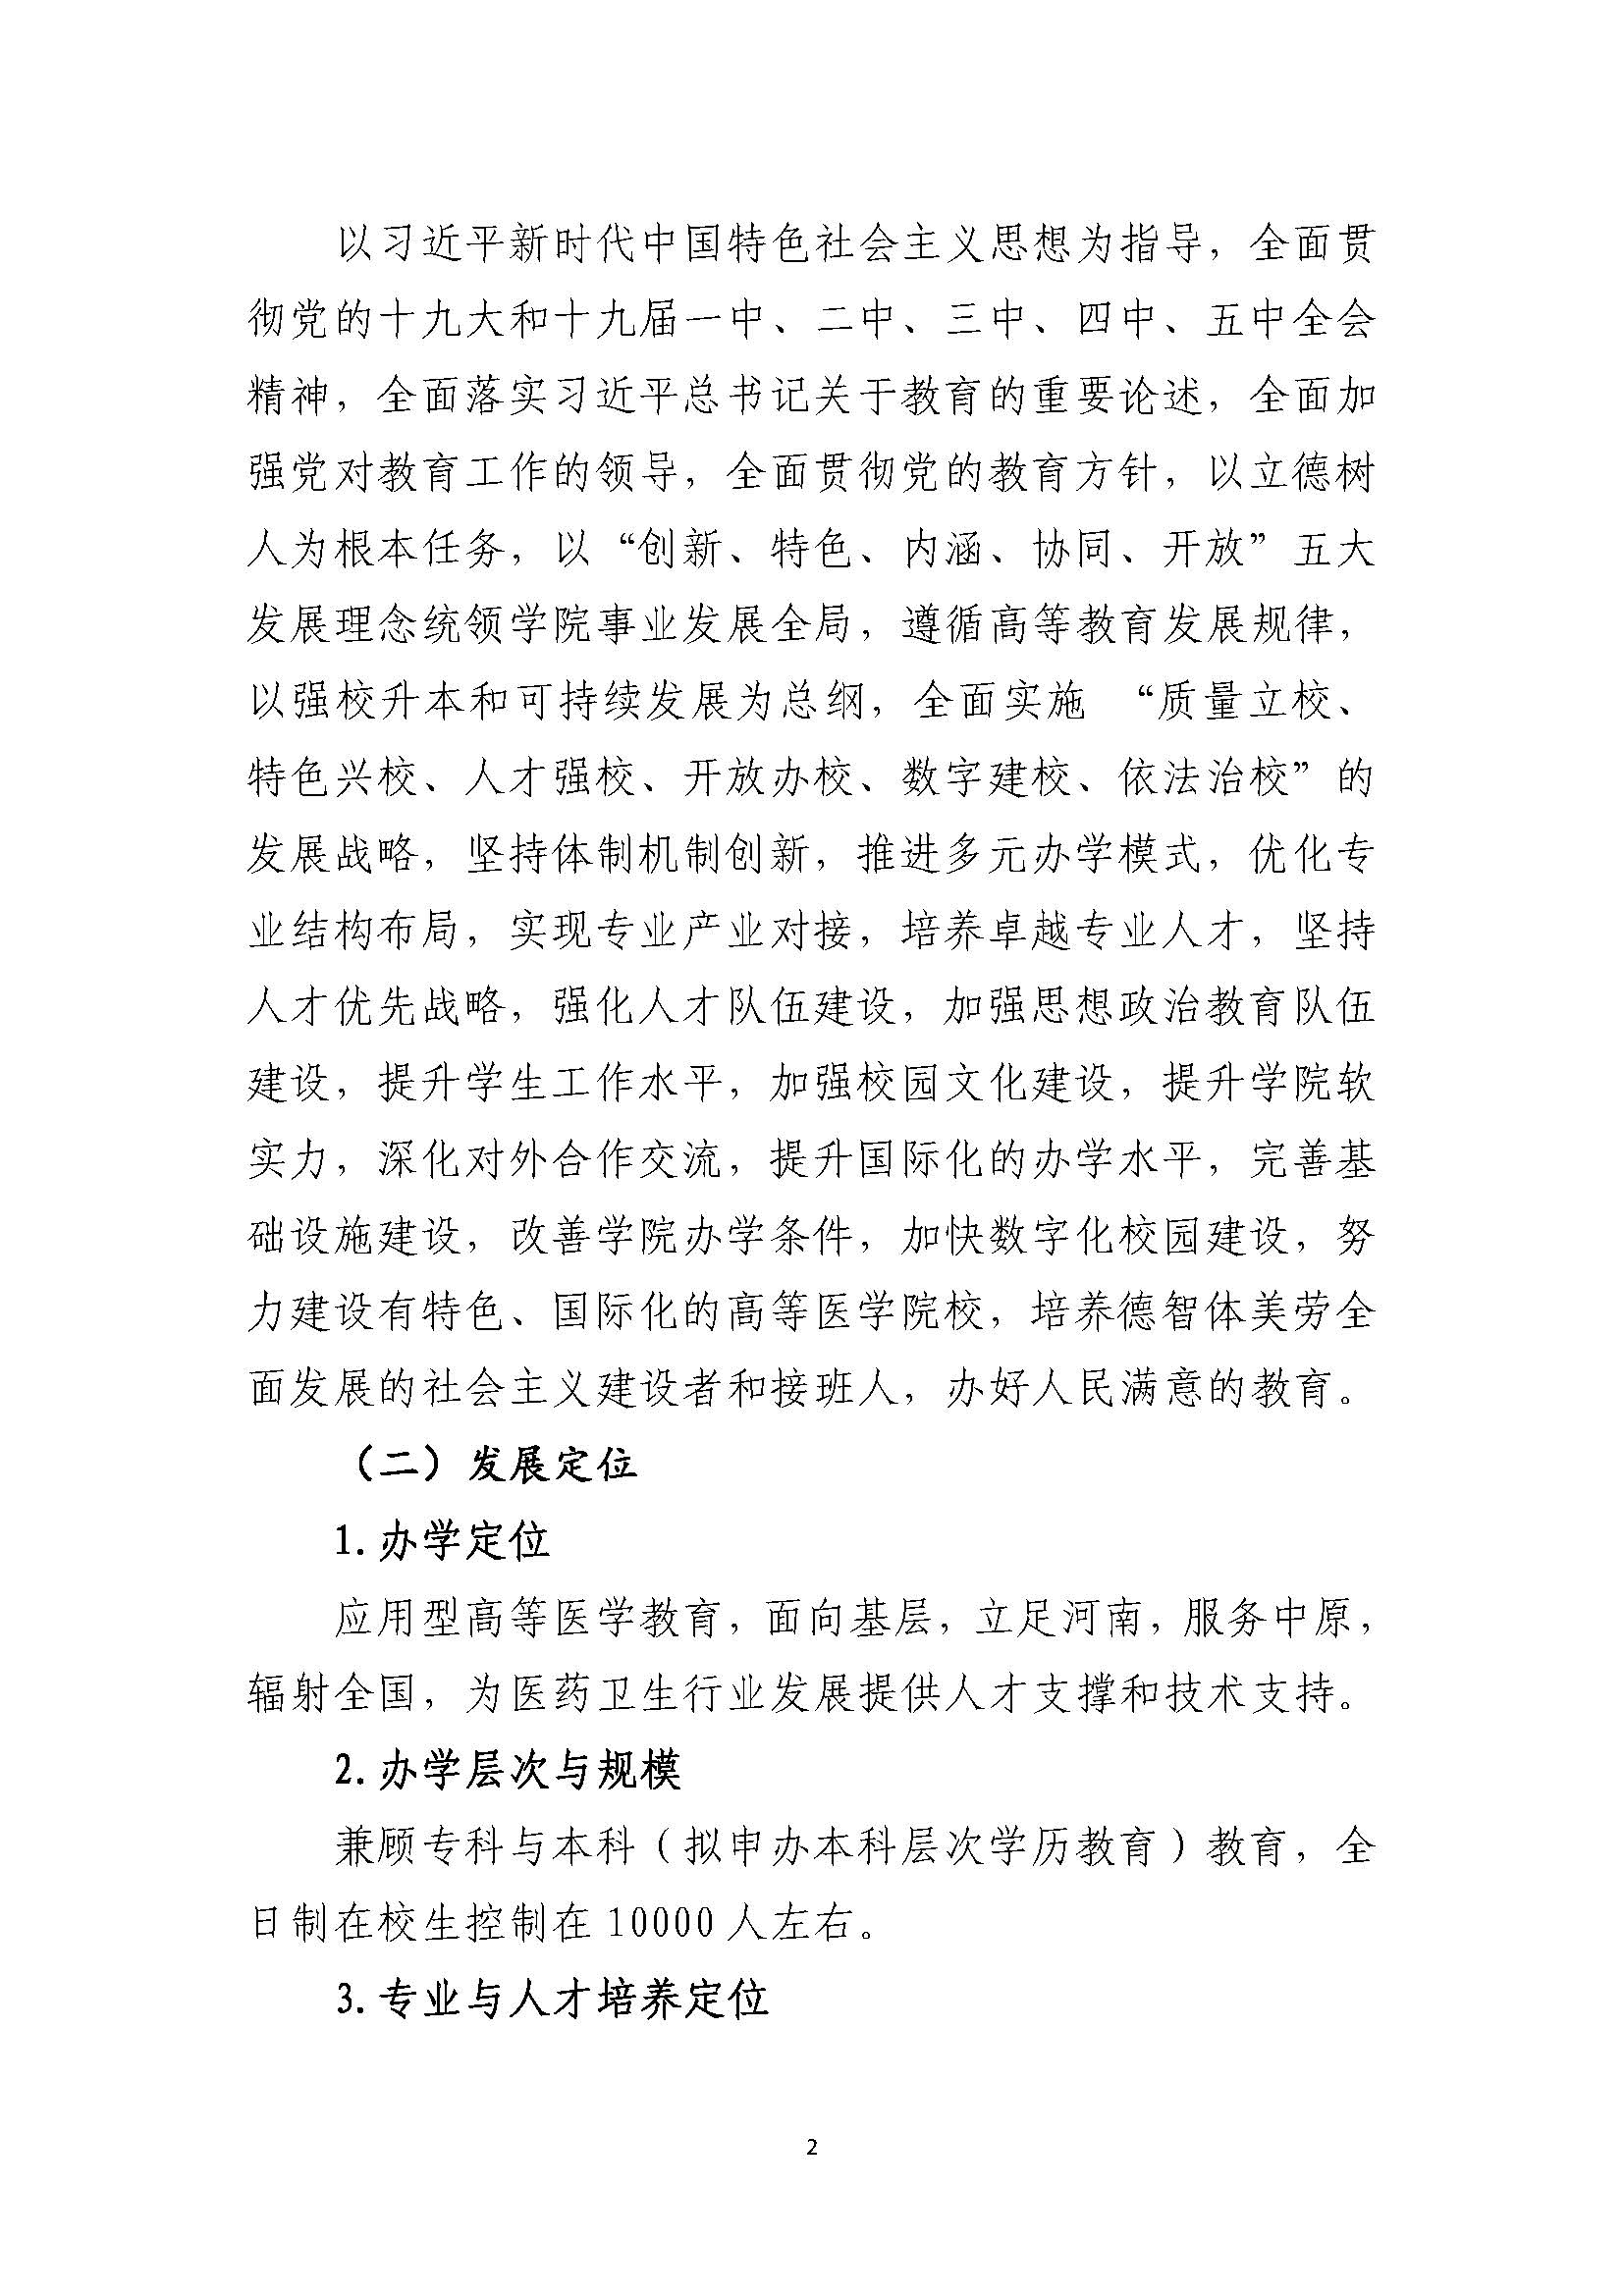 郑州黄河护理职业学院2021-2025年发展规划_页面_02.jpg